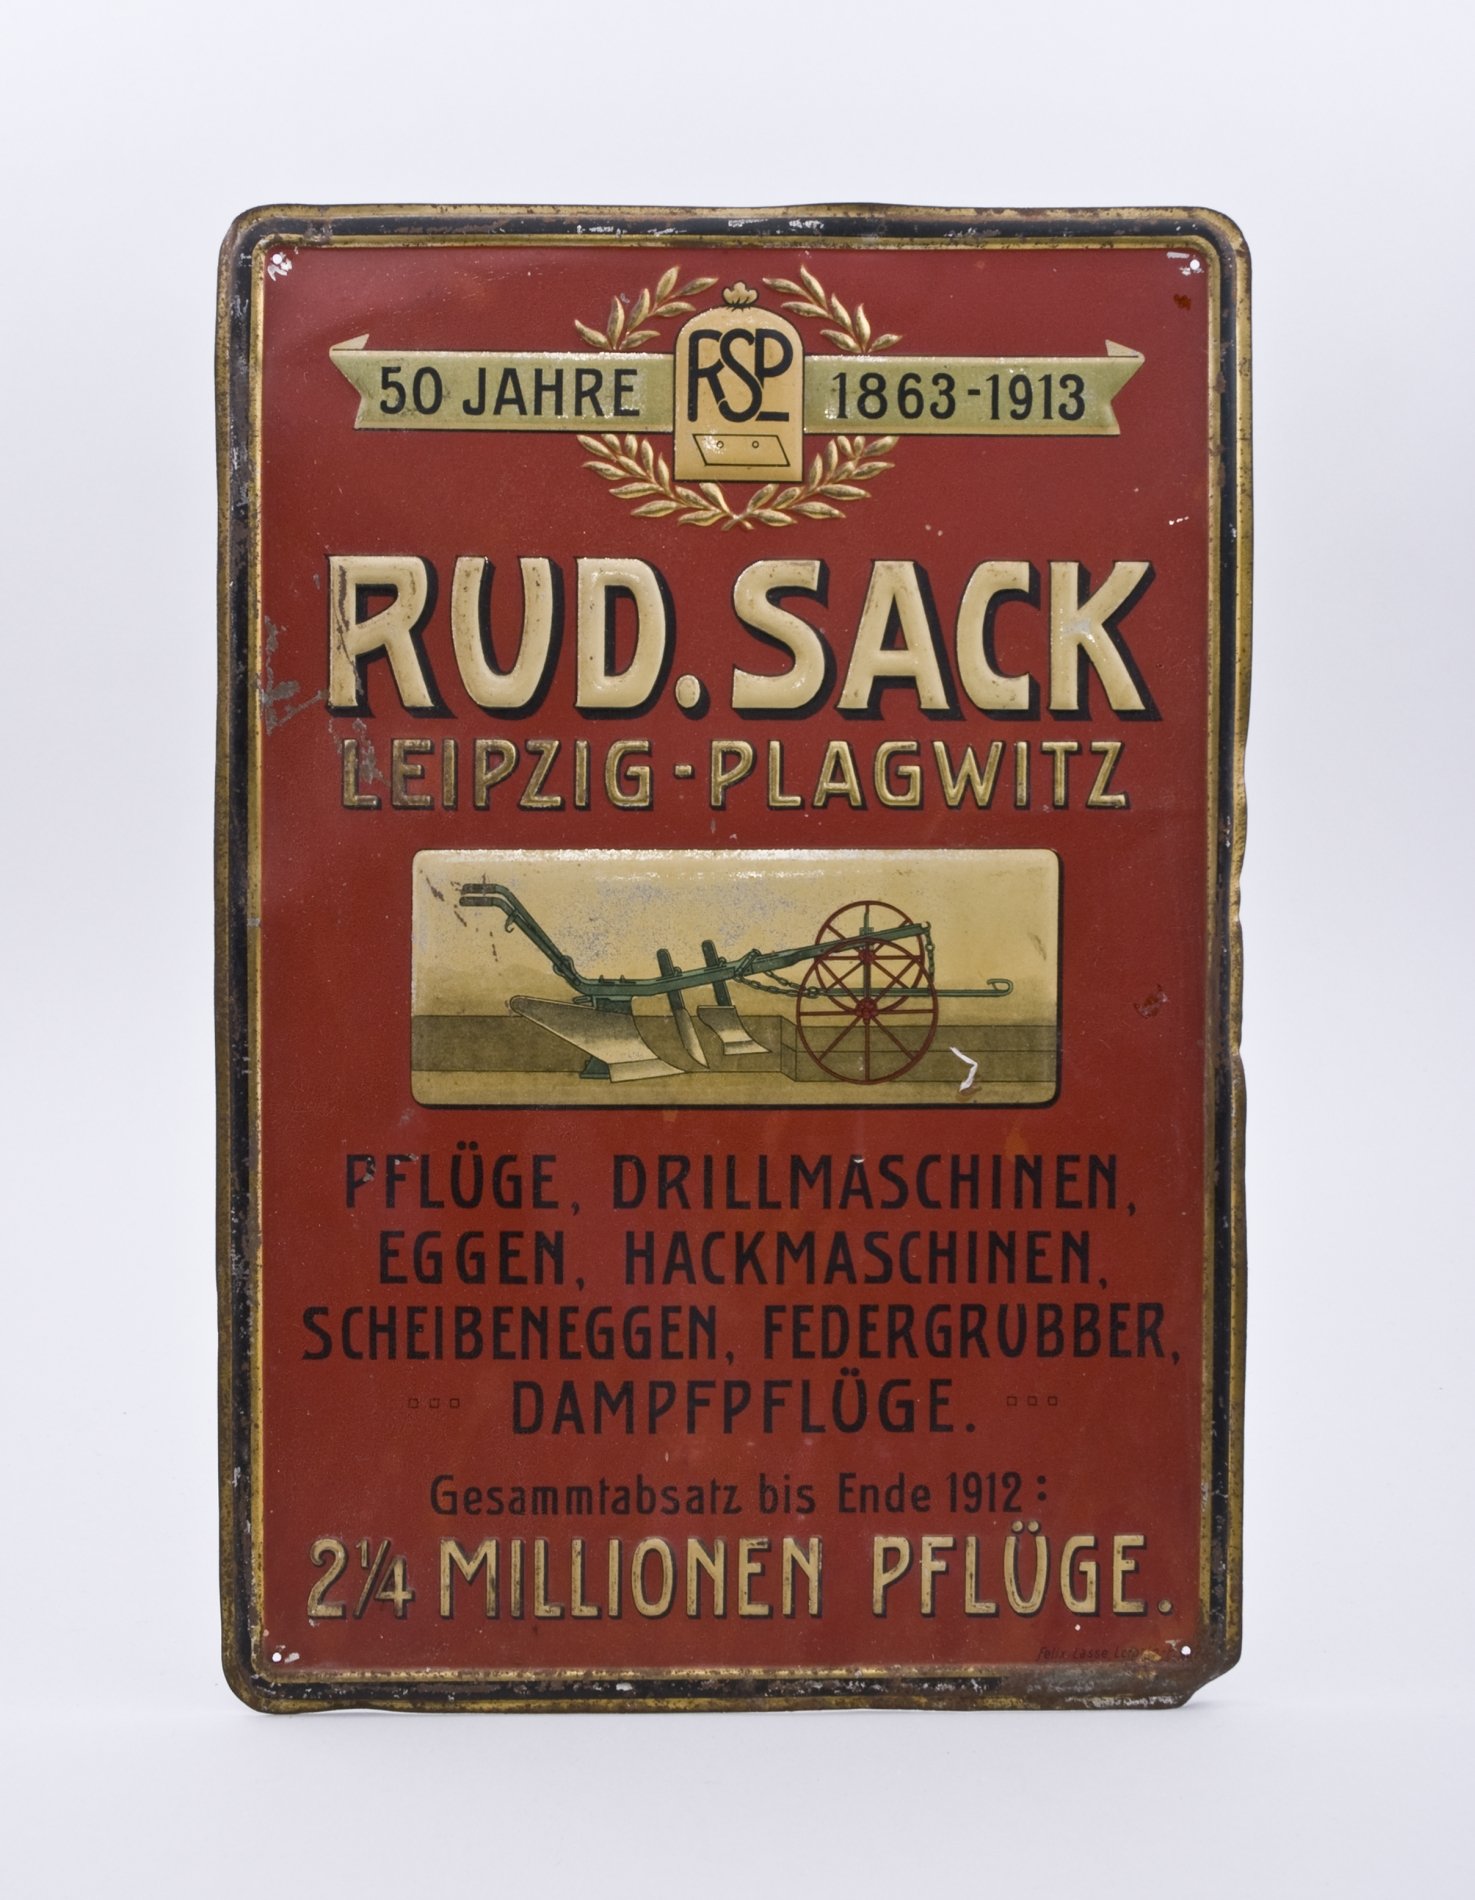 Werbeschild für "50 Jahre Rudolph Sack" (Stiftung Domäne Dahlem - Landgut und Museum, Weiternutzung nur mit Genehmigung des Museums CC BY-NC-SA)